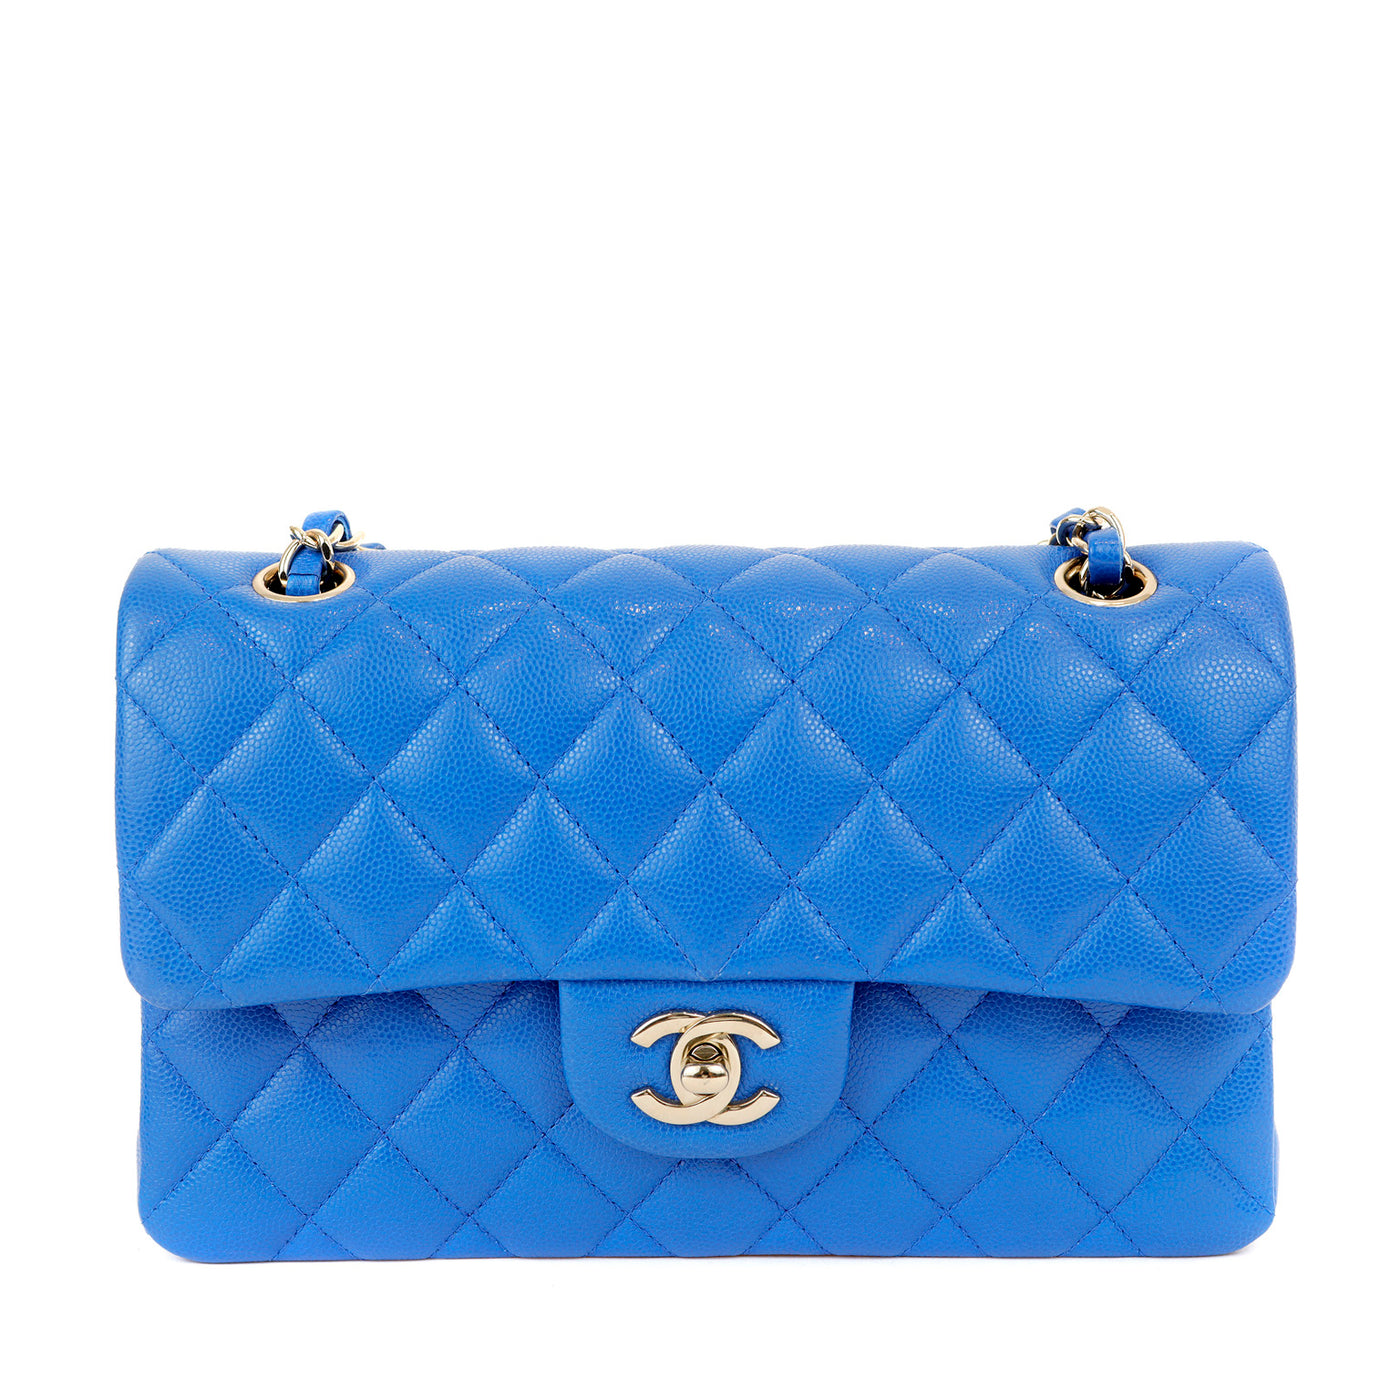 Stunning Blue Celine Bag